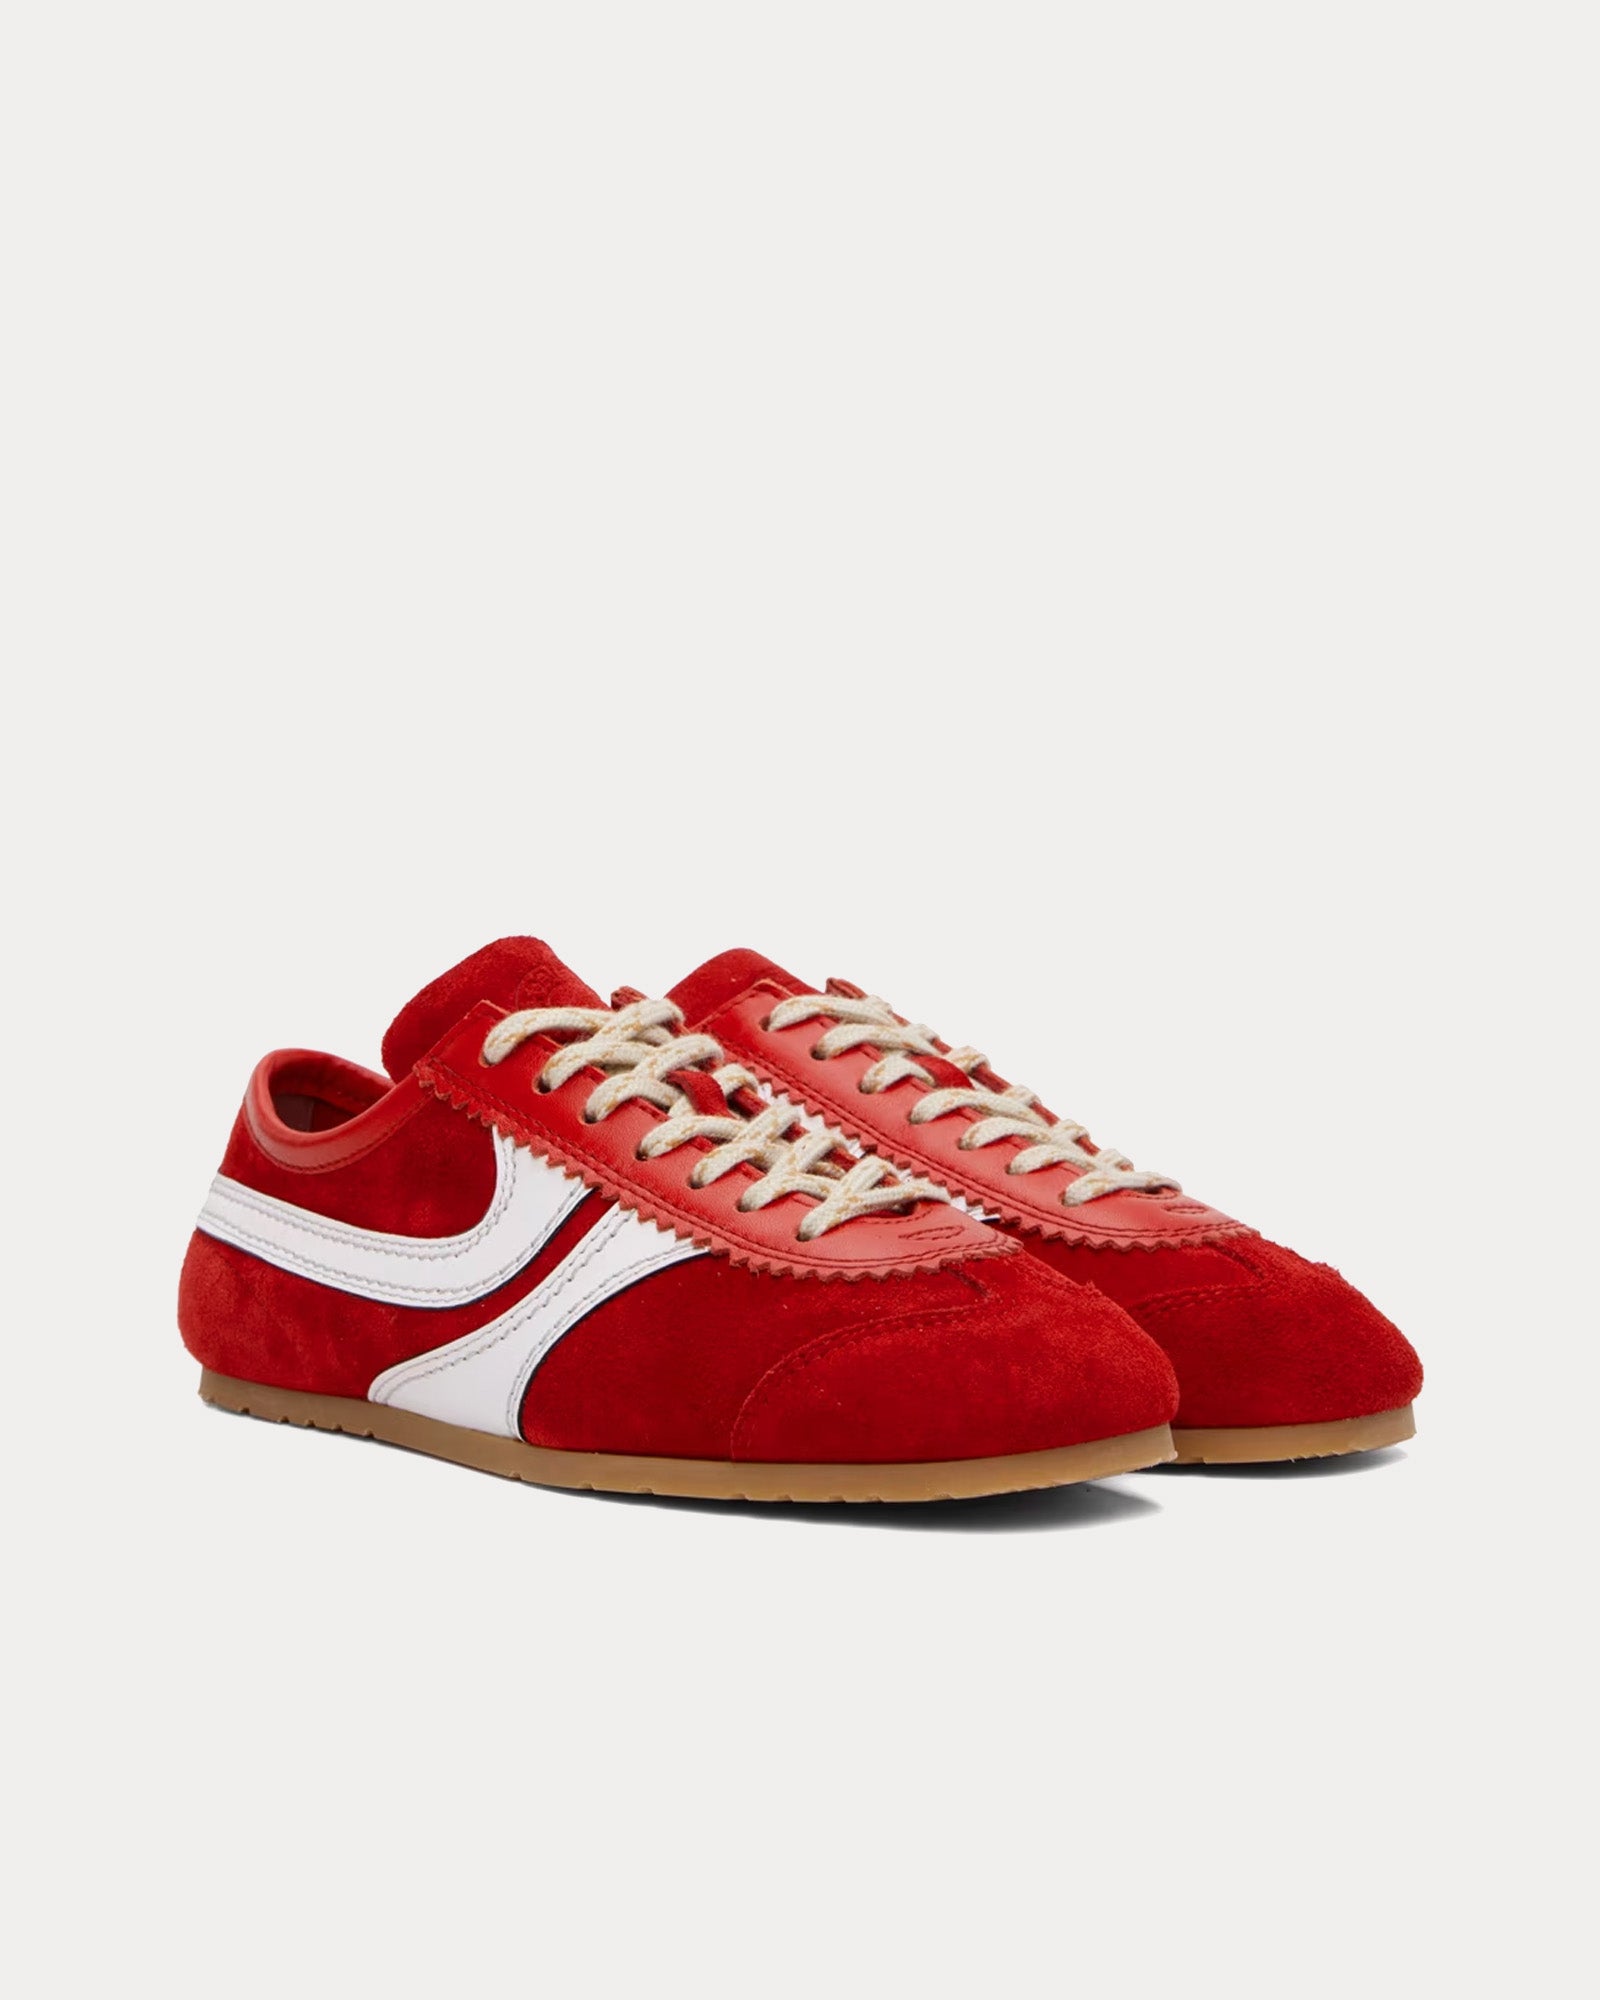 Dries Van Noten - 70's Suede Red Low Top Sneakers